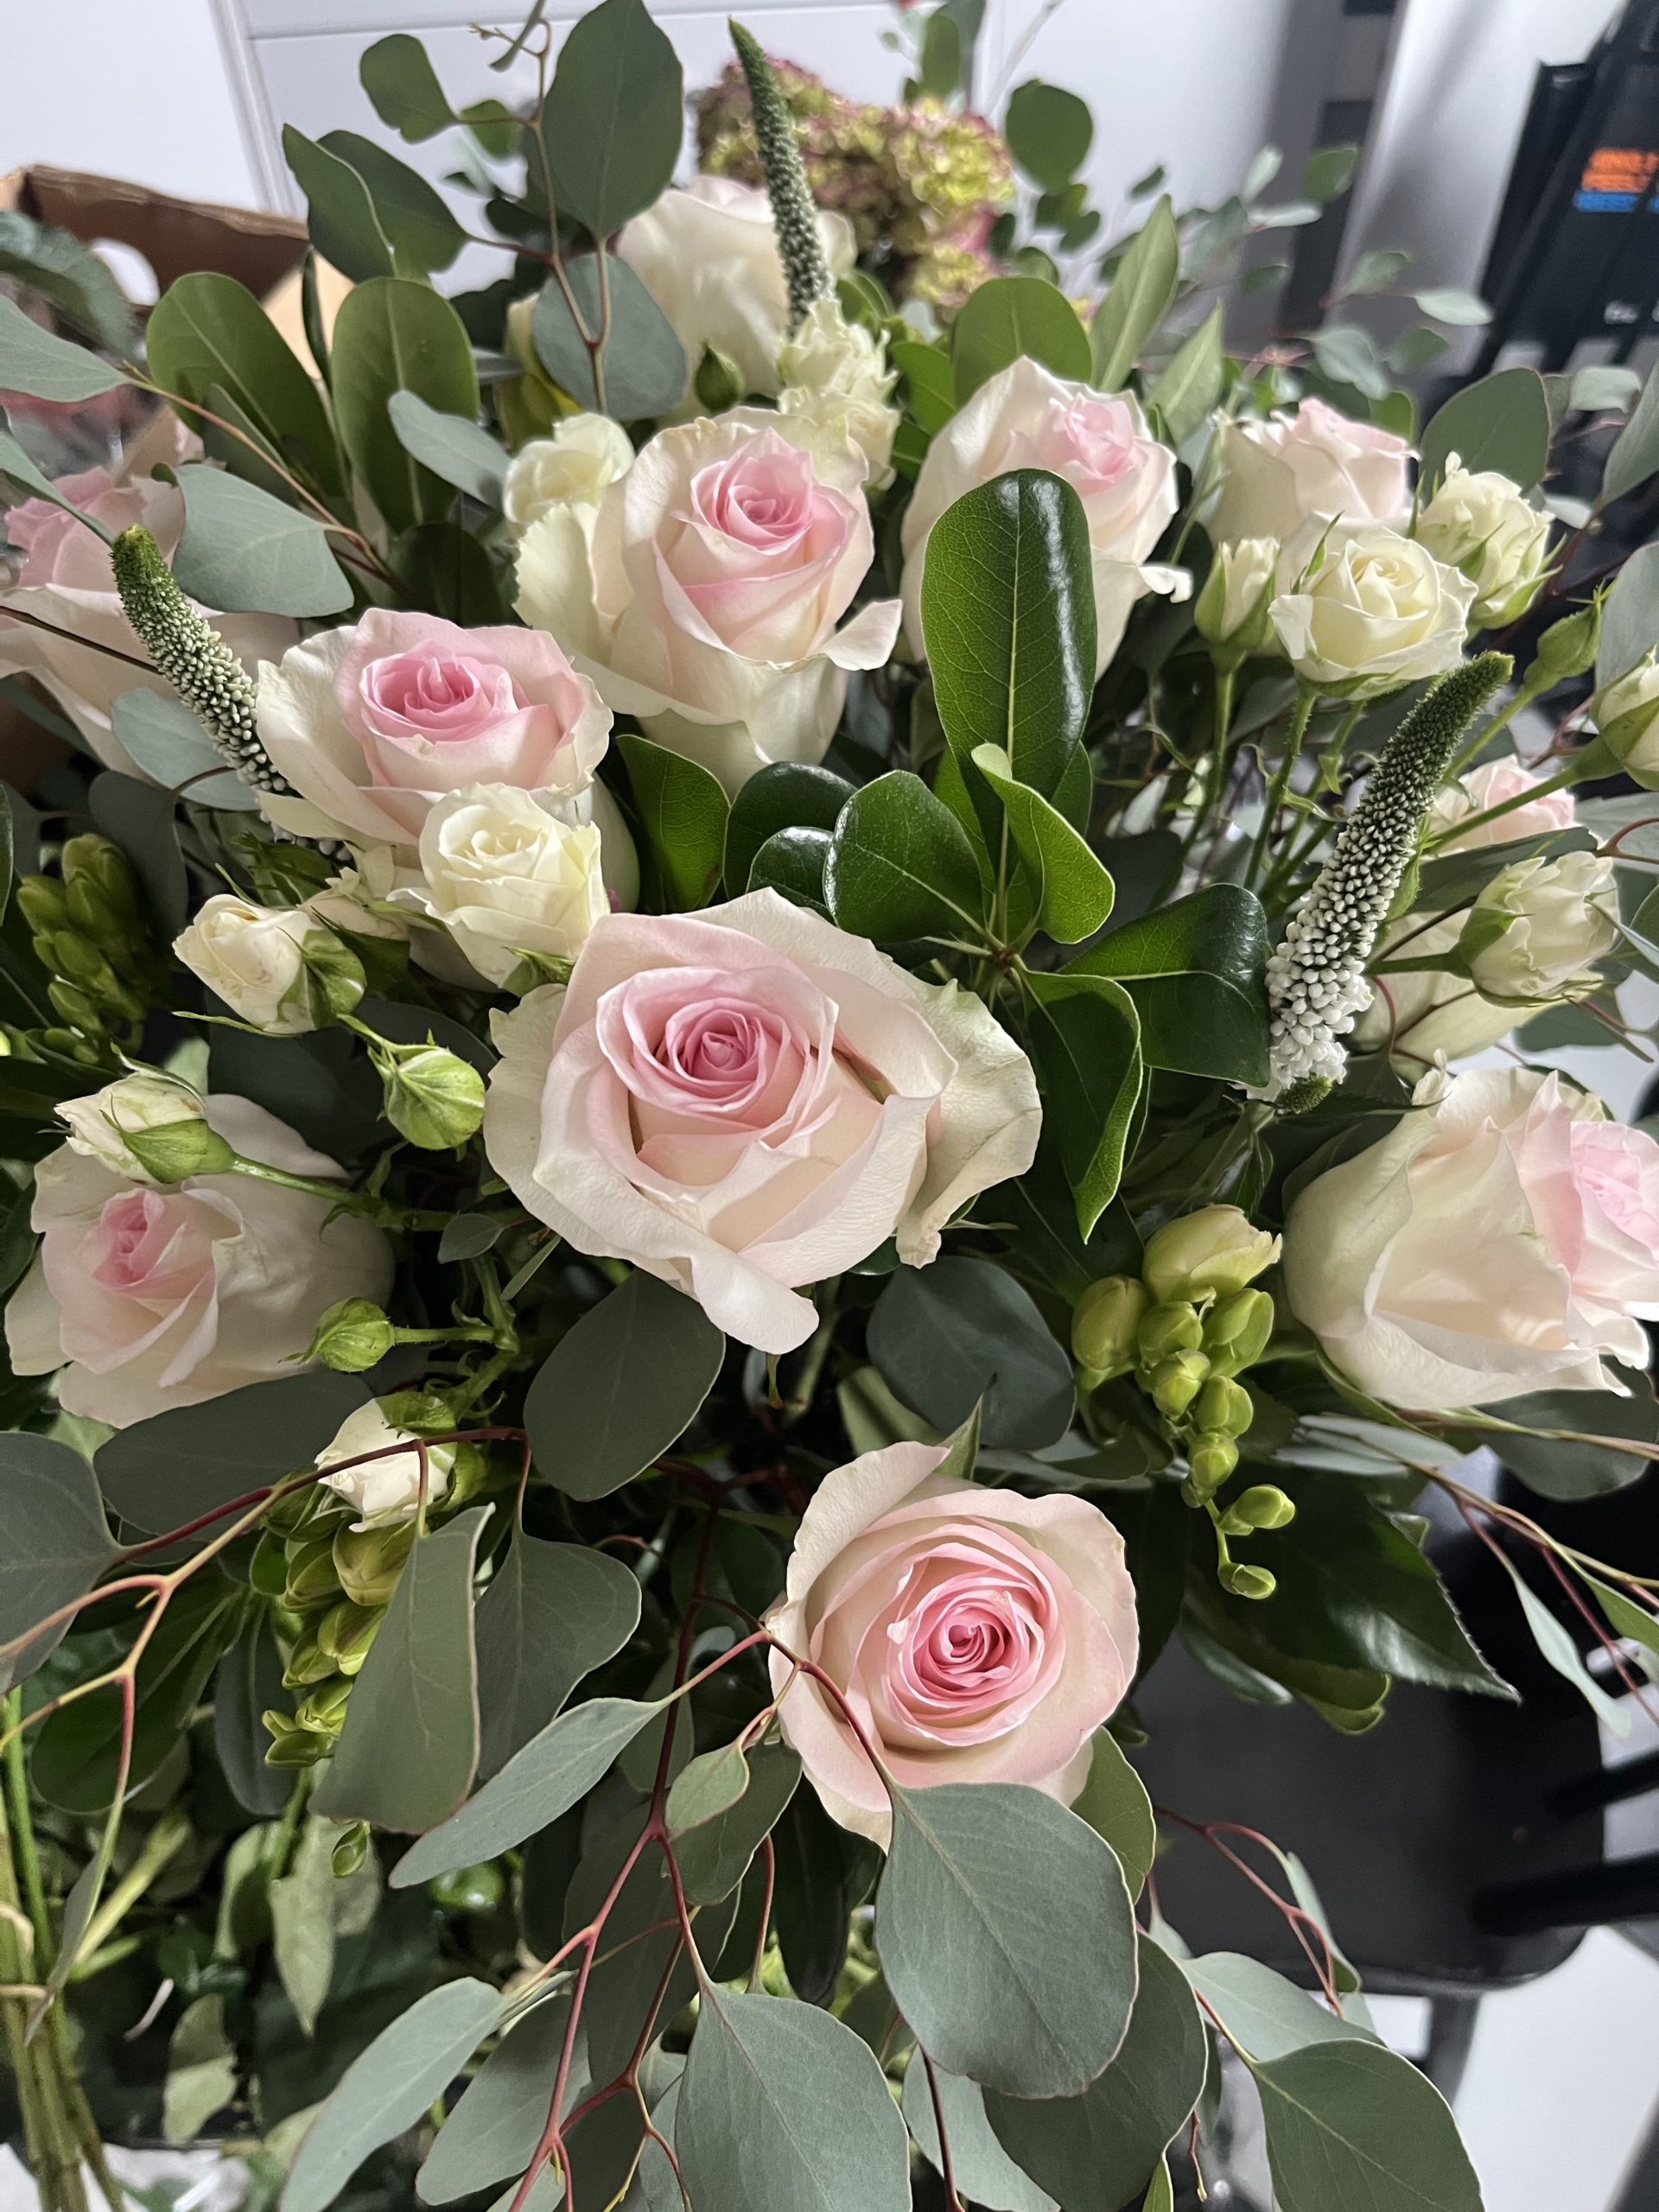 A Dozen Rose Bouquet